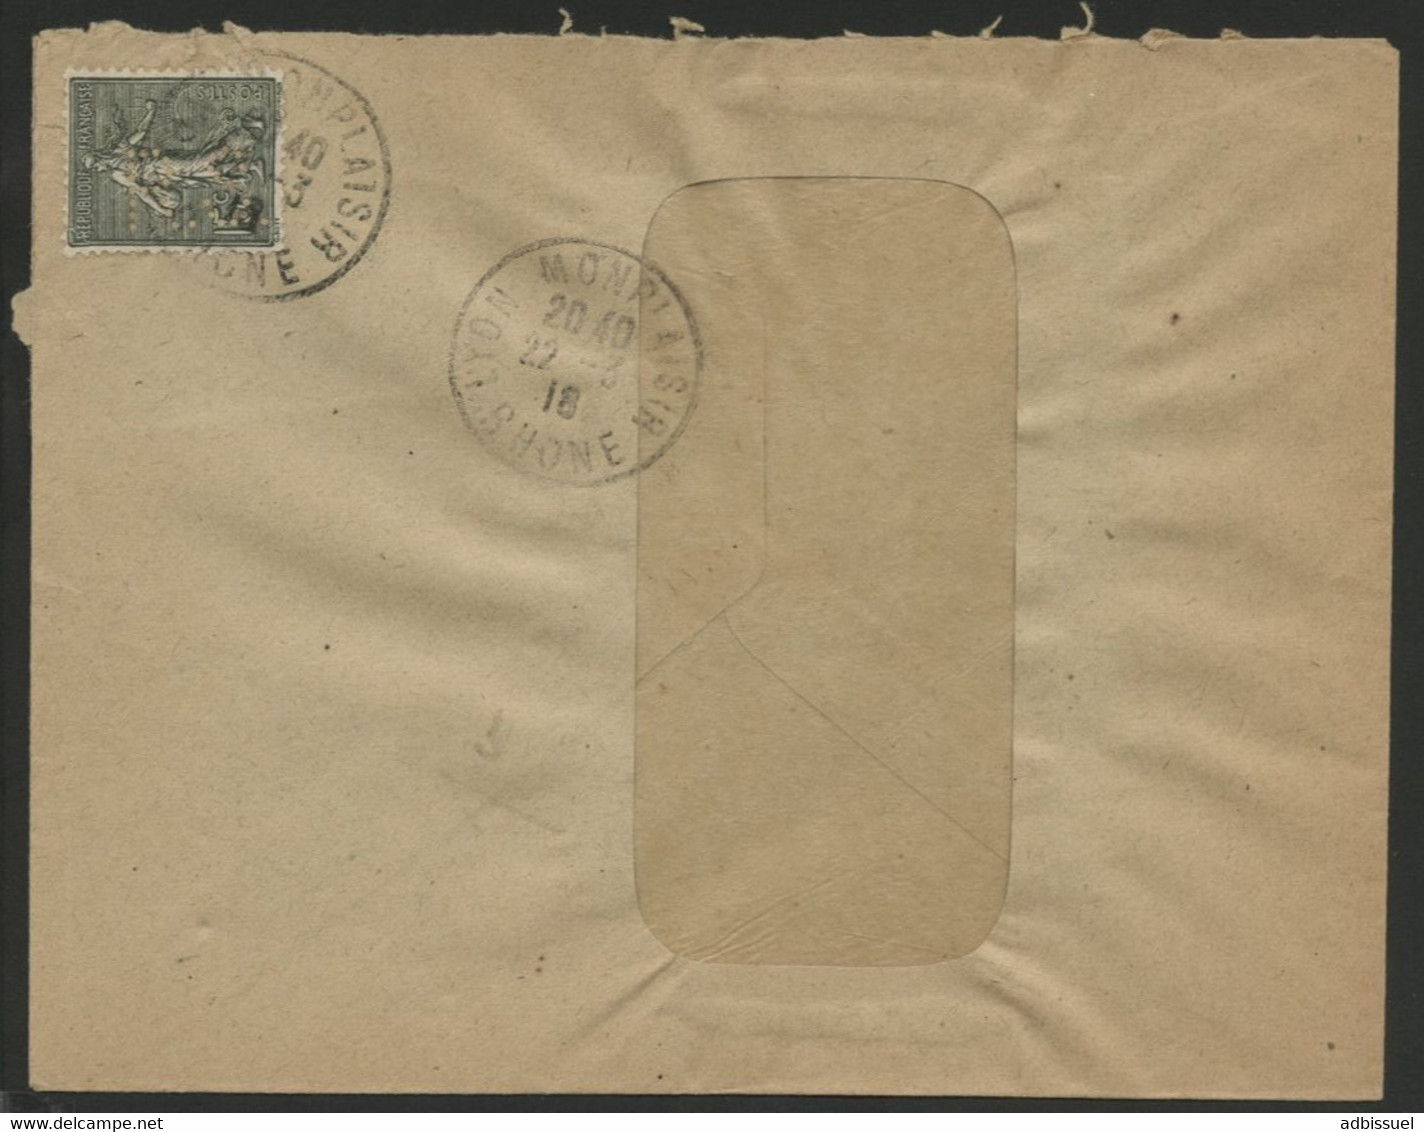 ROCHET SCHNEIDER LYON N° 130 Perforé R.S De Lyon En 1918. Au Verso L'adresse Imprimée 57-59 CHEMIN FEUILLAT LYON - Covers & Documents